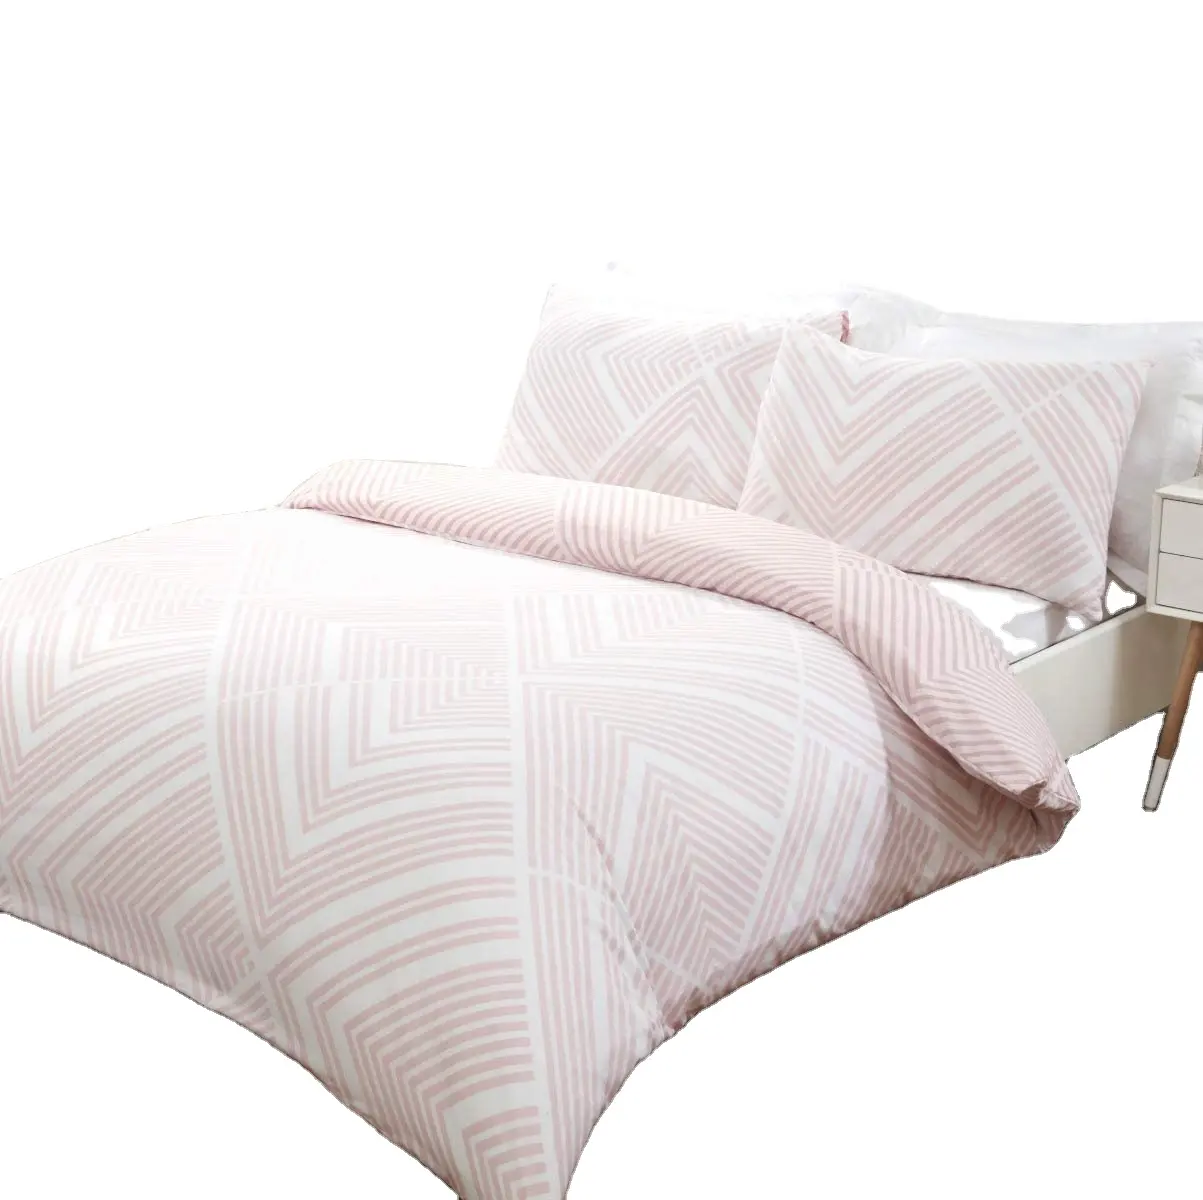 Stripe Multi color Duvet Cover & Pillowcase Set Bedding Quilt Soft microfiber Quilt Cover Set